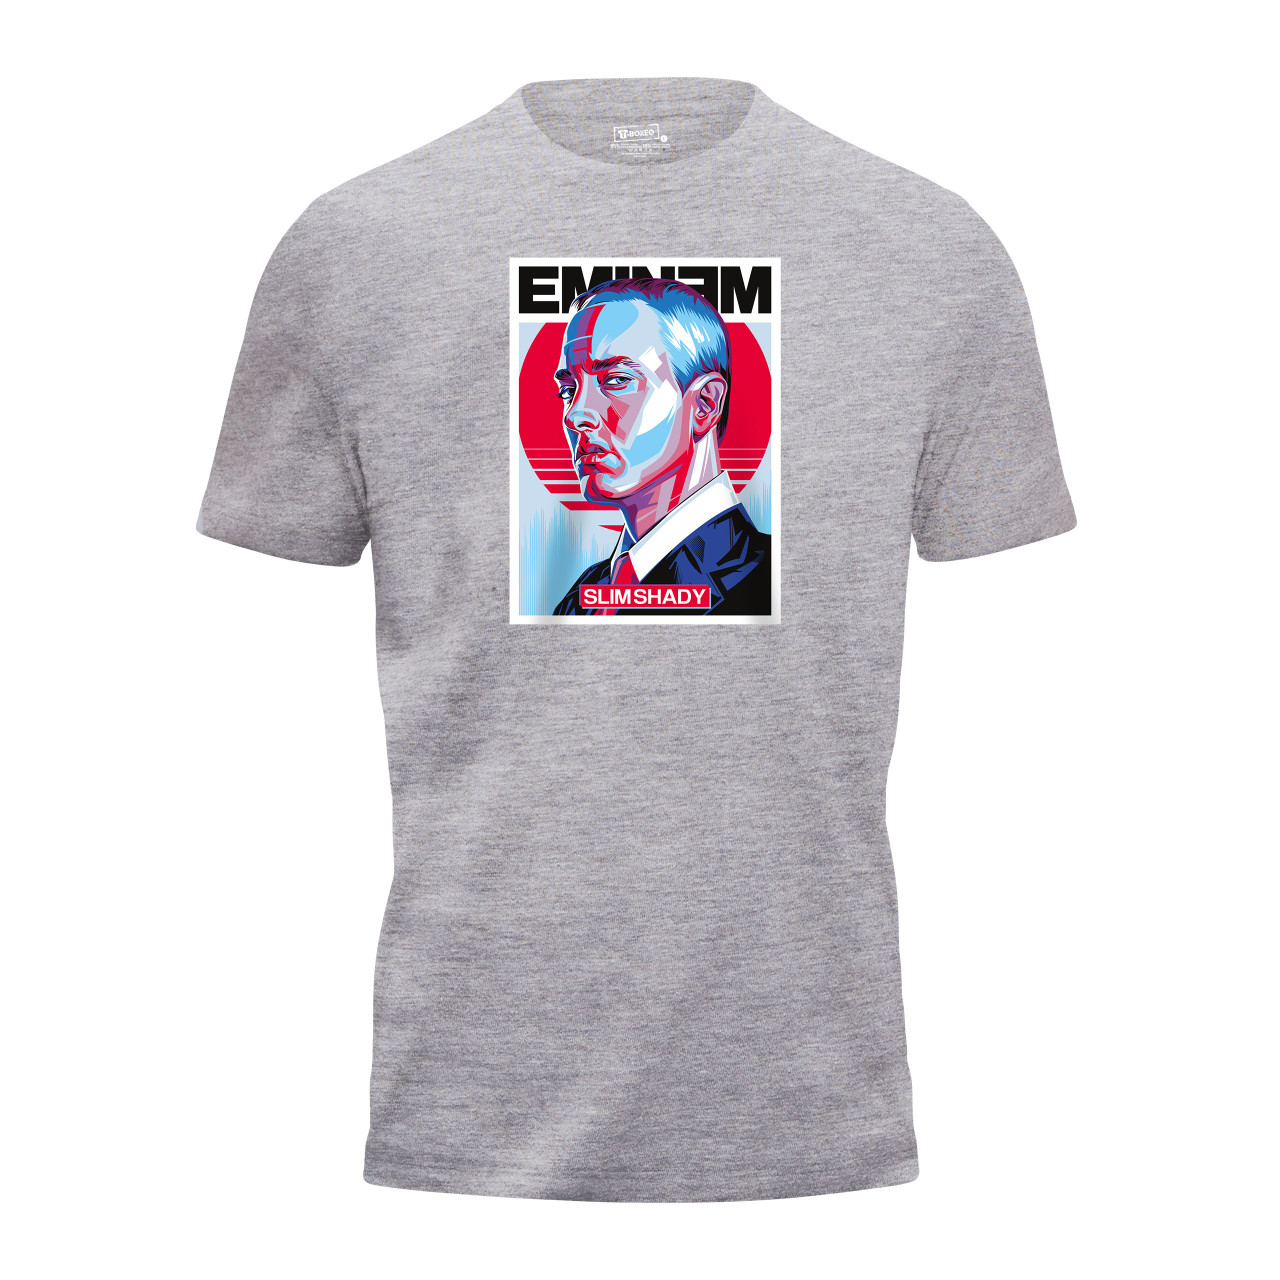 Pánské tričko s potiskem “Eminem”